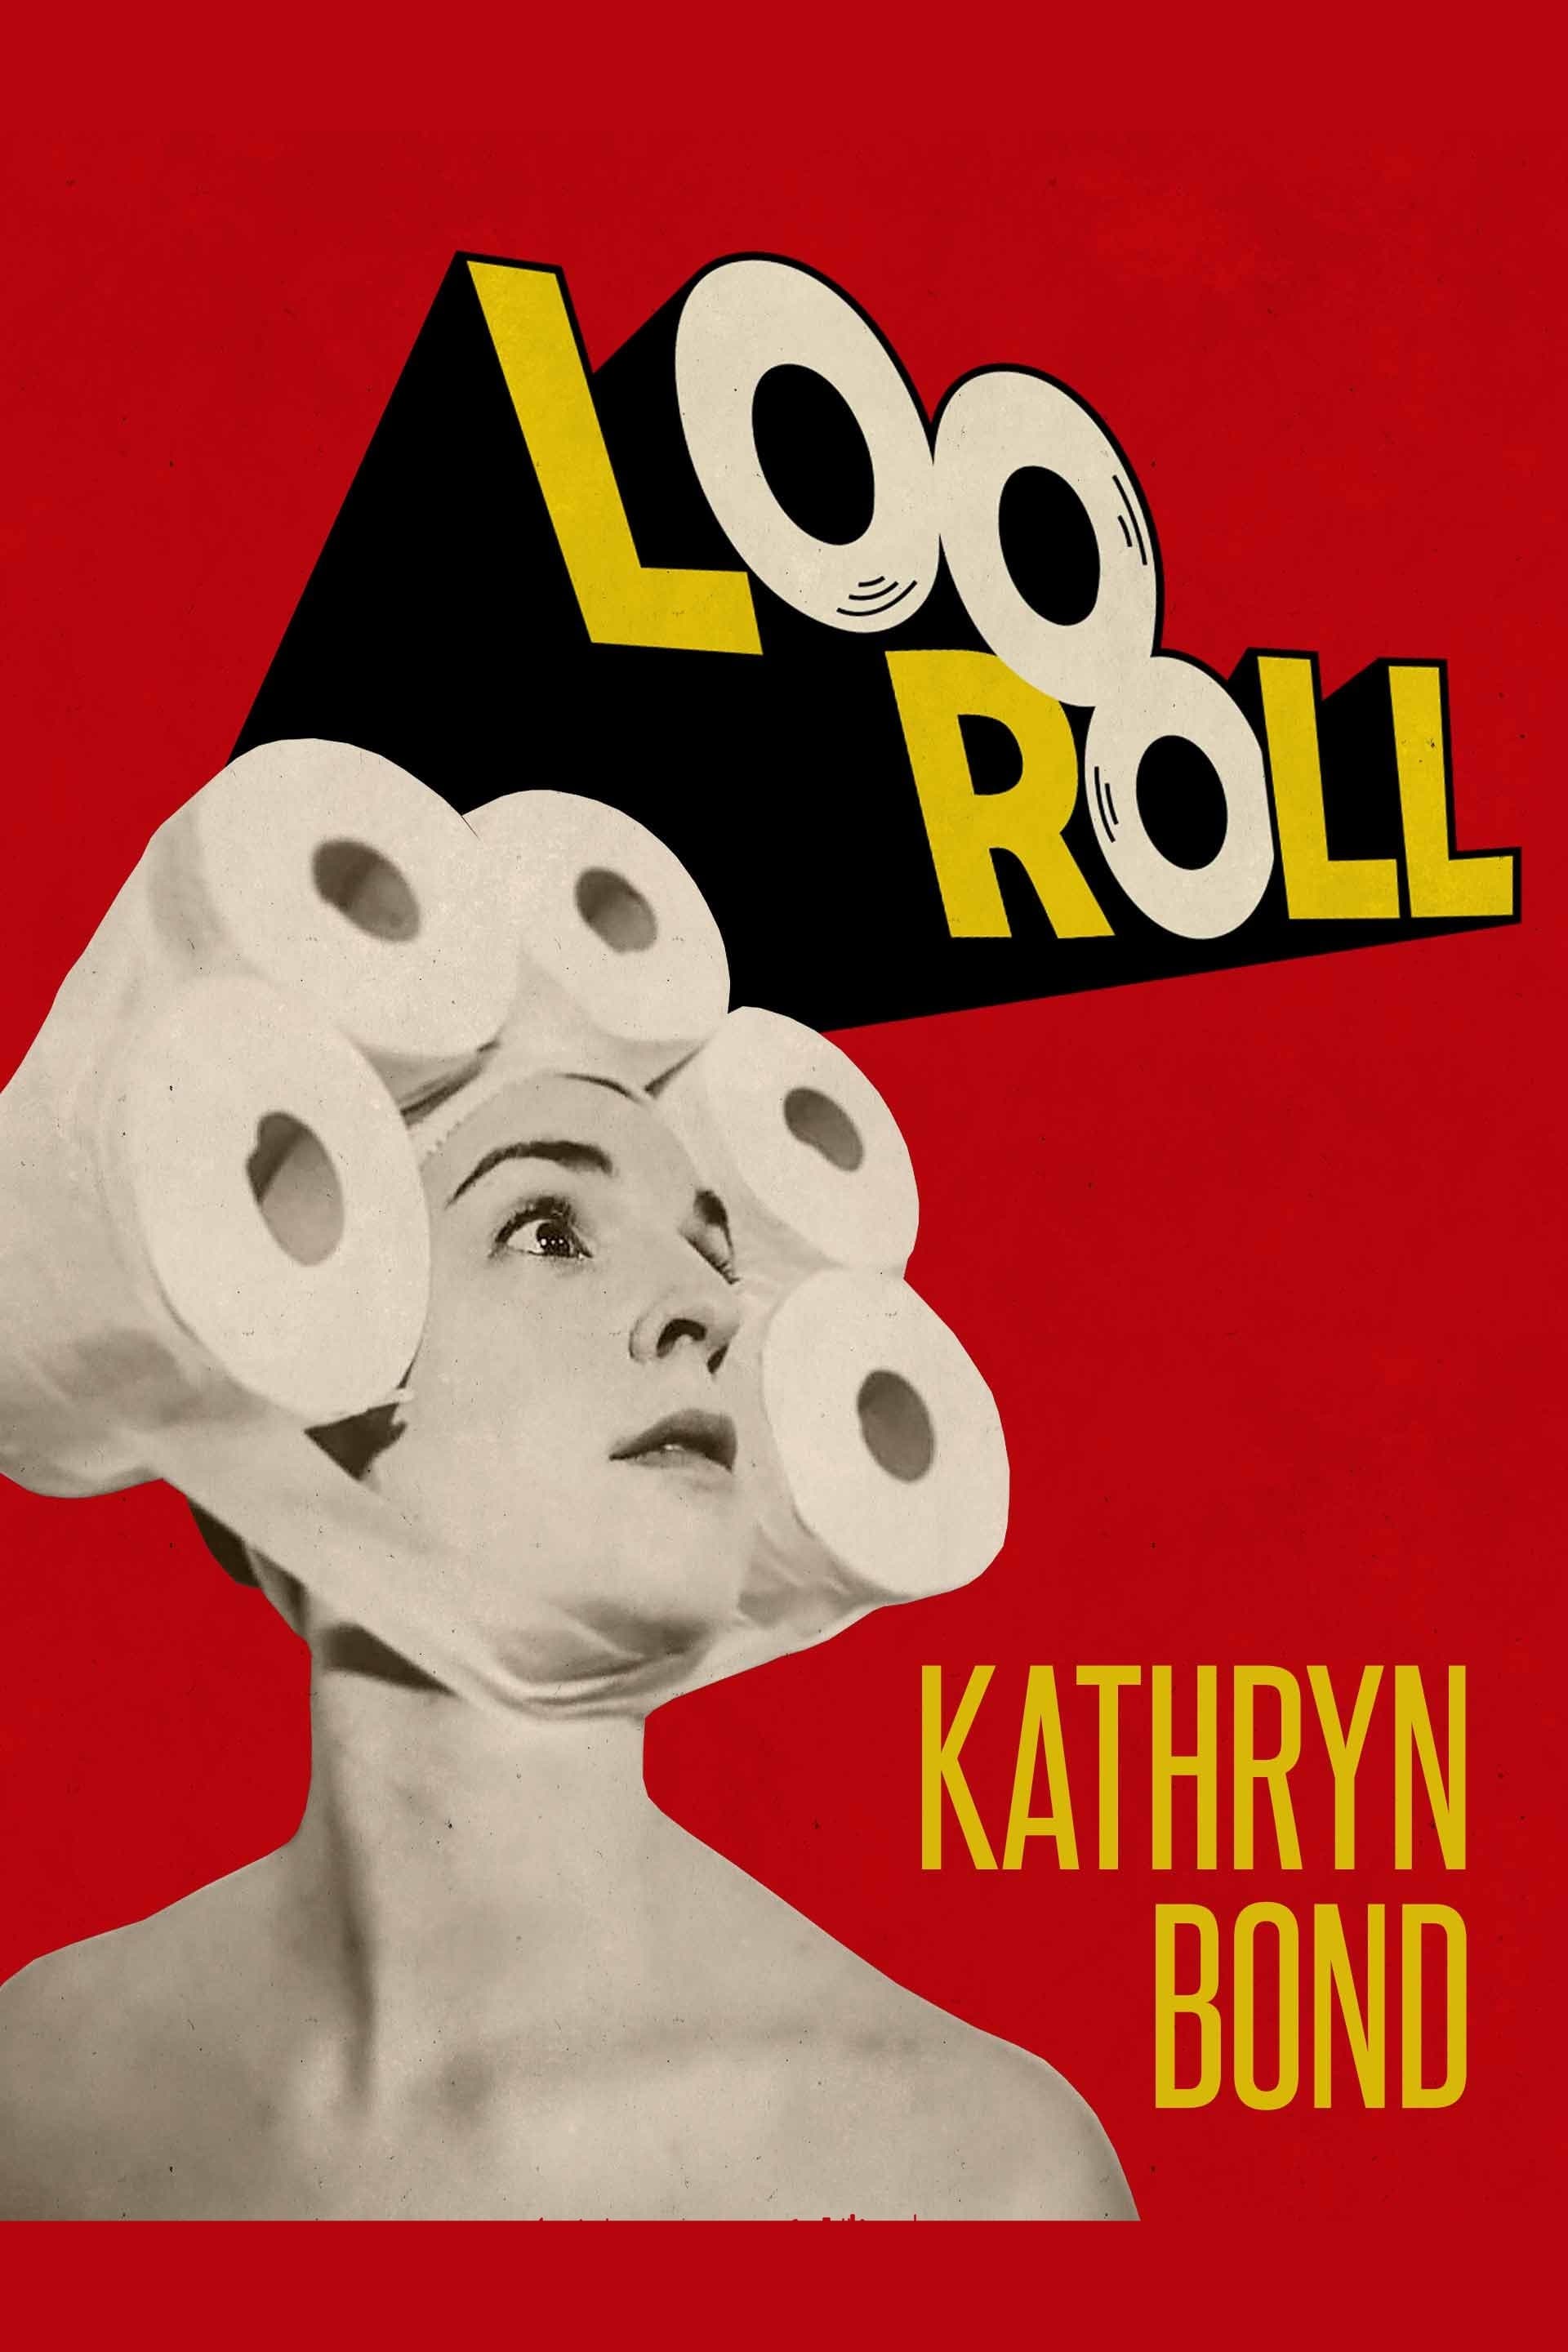 Kathryn Bond: Loo Roll